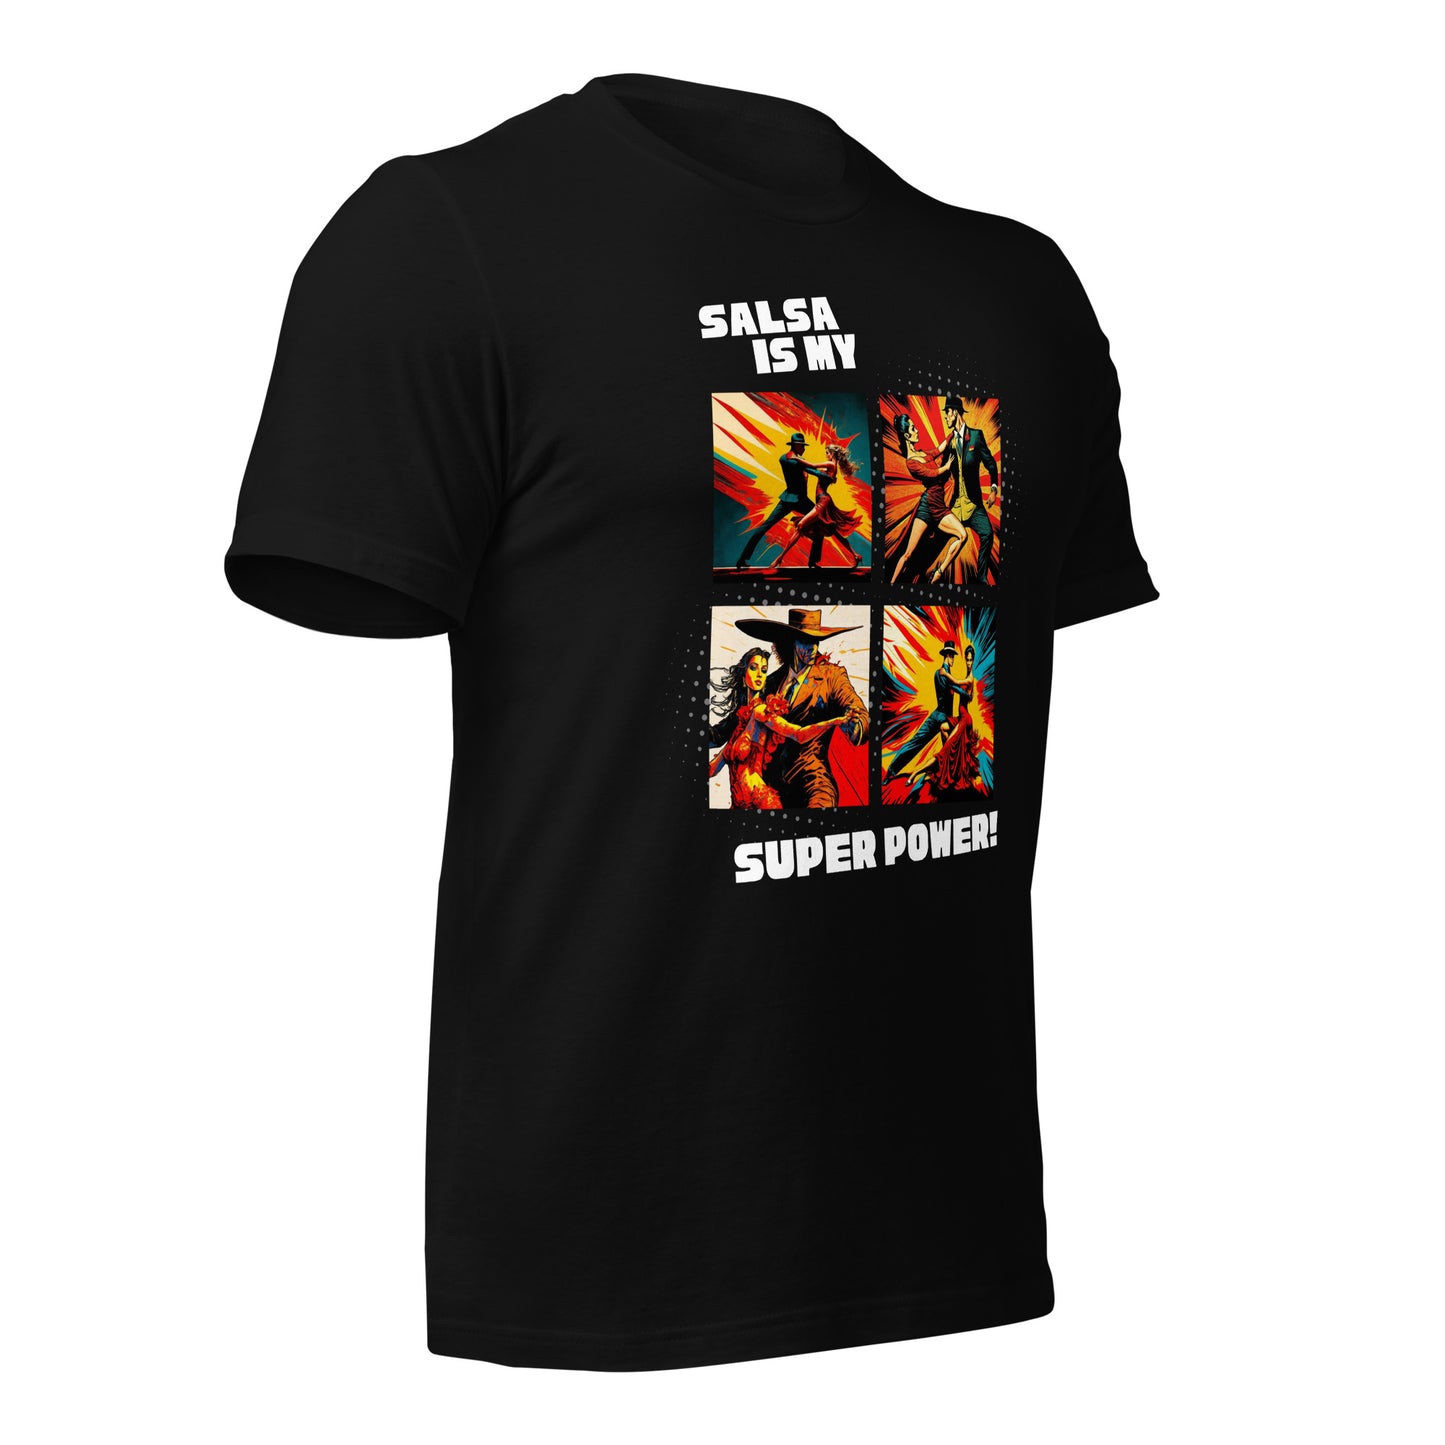 Salsa is My Super Power!